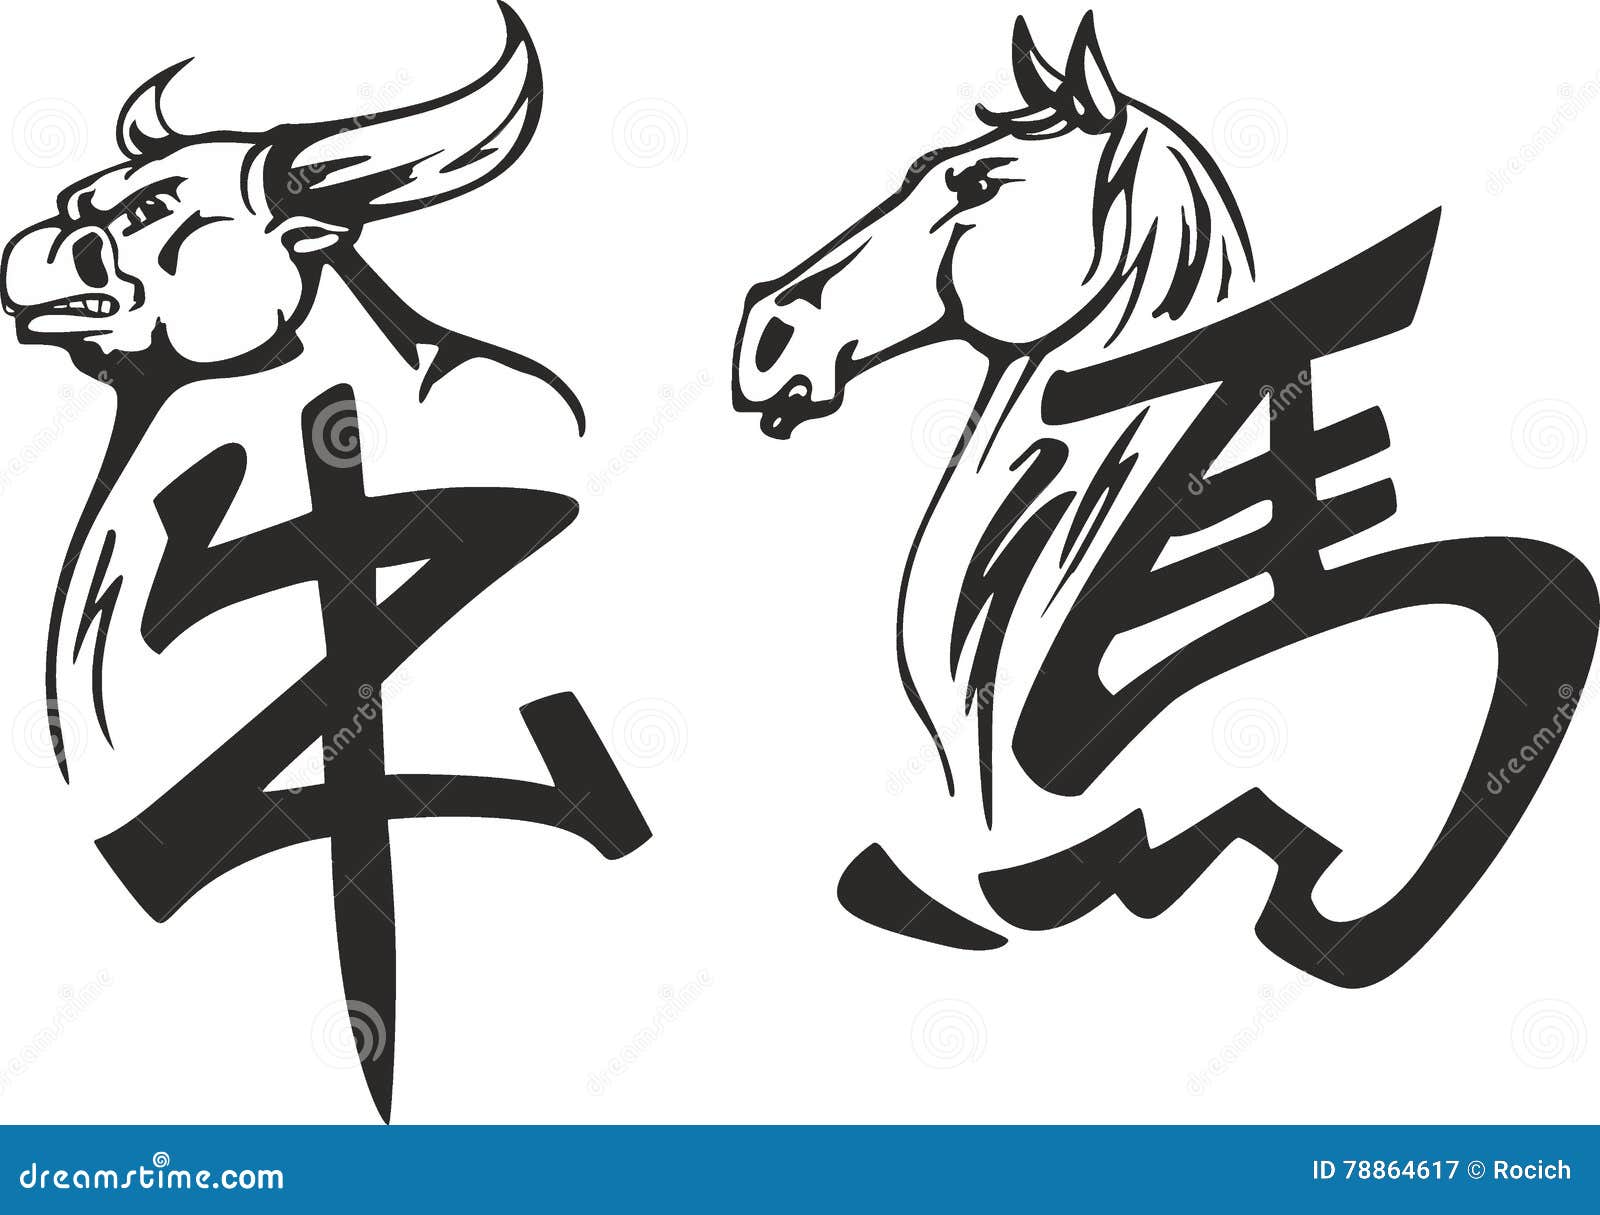 公牛和马中国象形文字向量例证 插画包括有敌意 风格化 剪影 例证 空白 投反对票 动物园